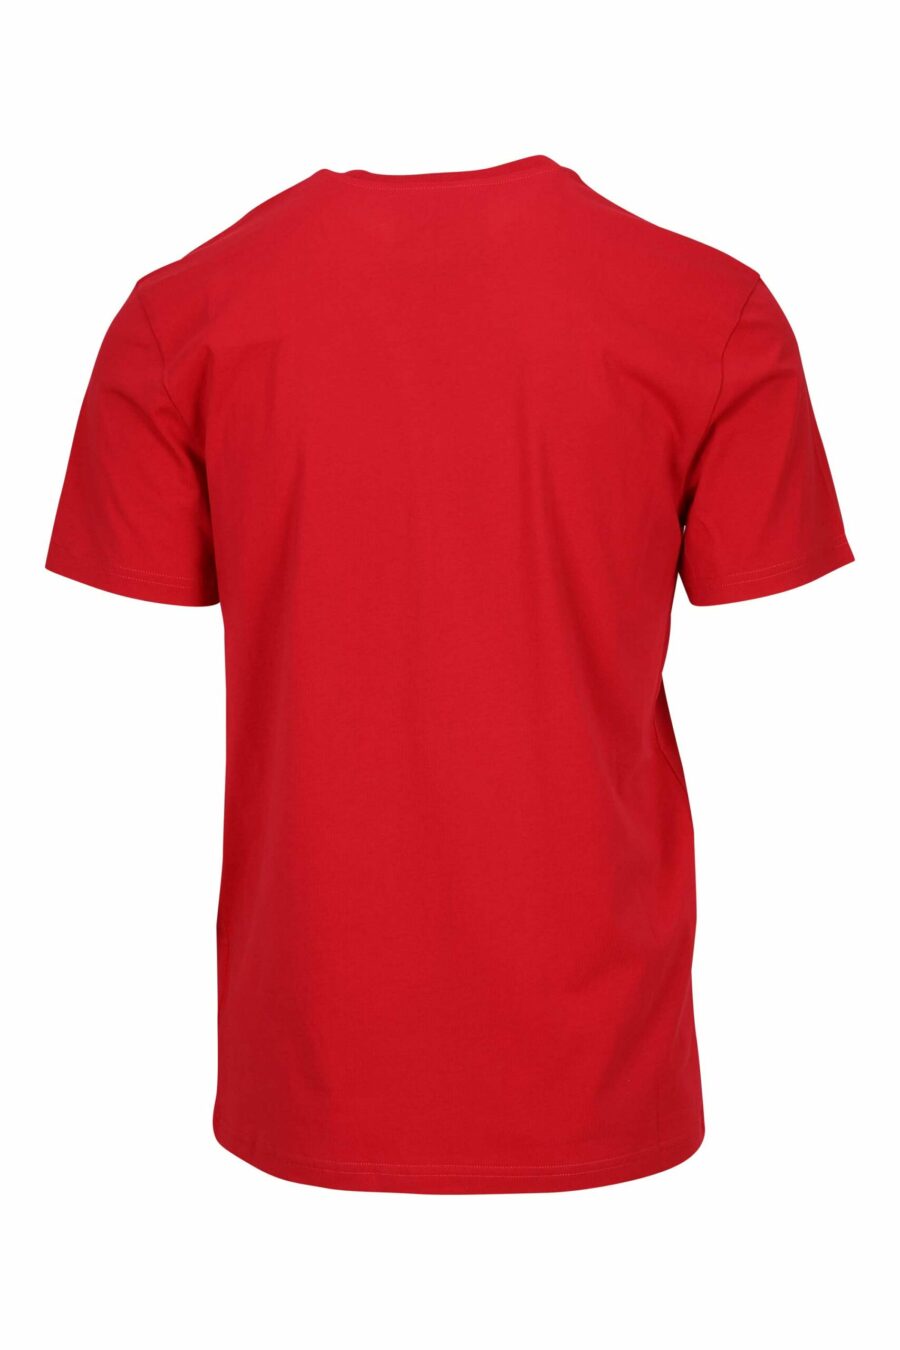 Camiseta roja "oversize" de algodón orgánico con maxilogo negro clásico - 667113751856 1 scaled